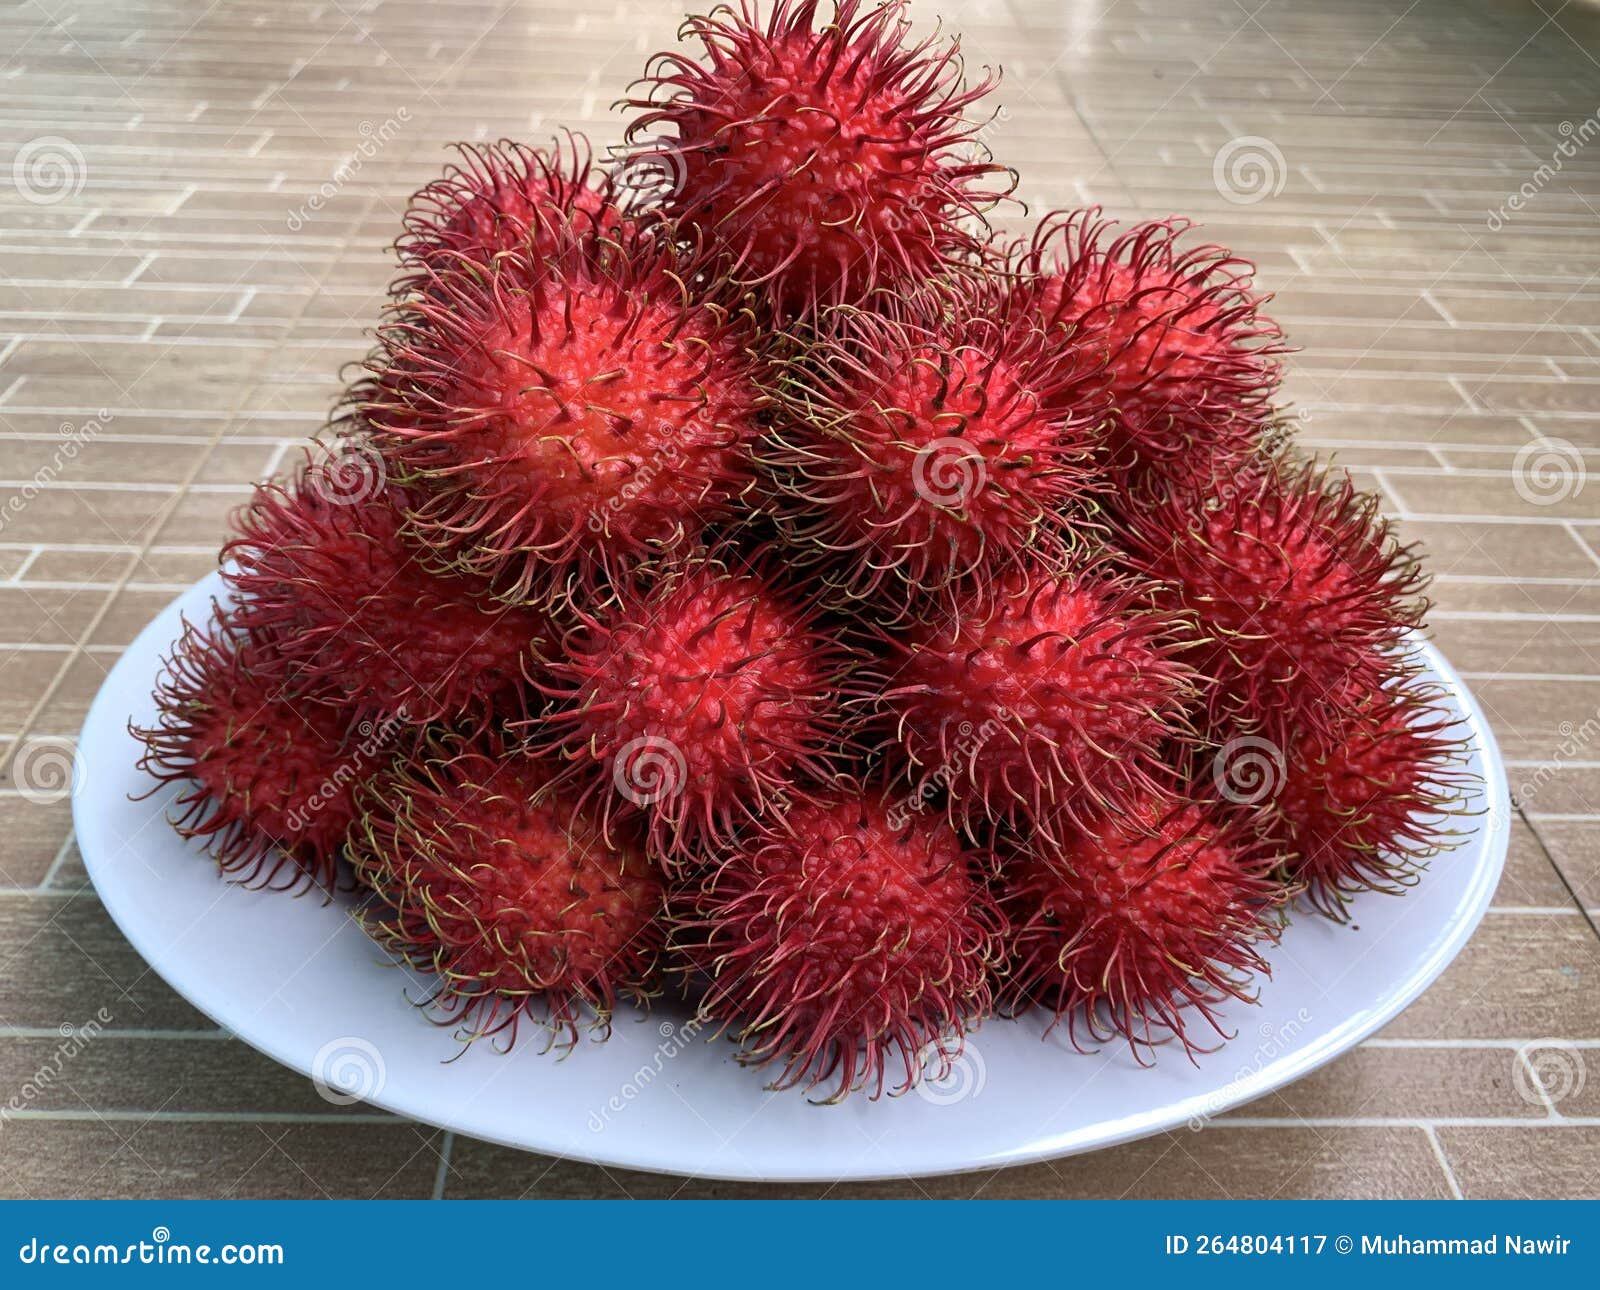 рамбутан или волосатый фрукт, полученный из индонии с сладким вкусом и  очень здоровым Стоковое Изображение - изображение насчитывающей природа,  пепельнообразные: 264804117